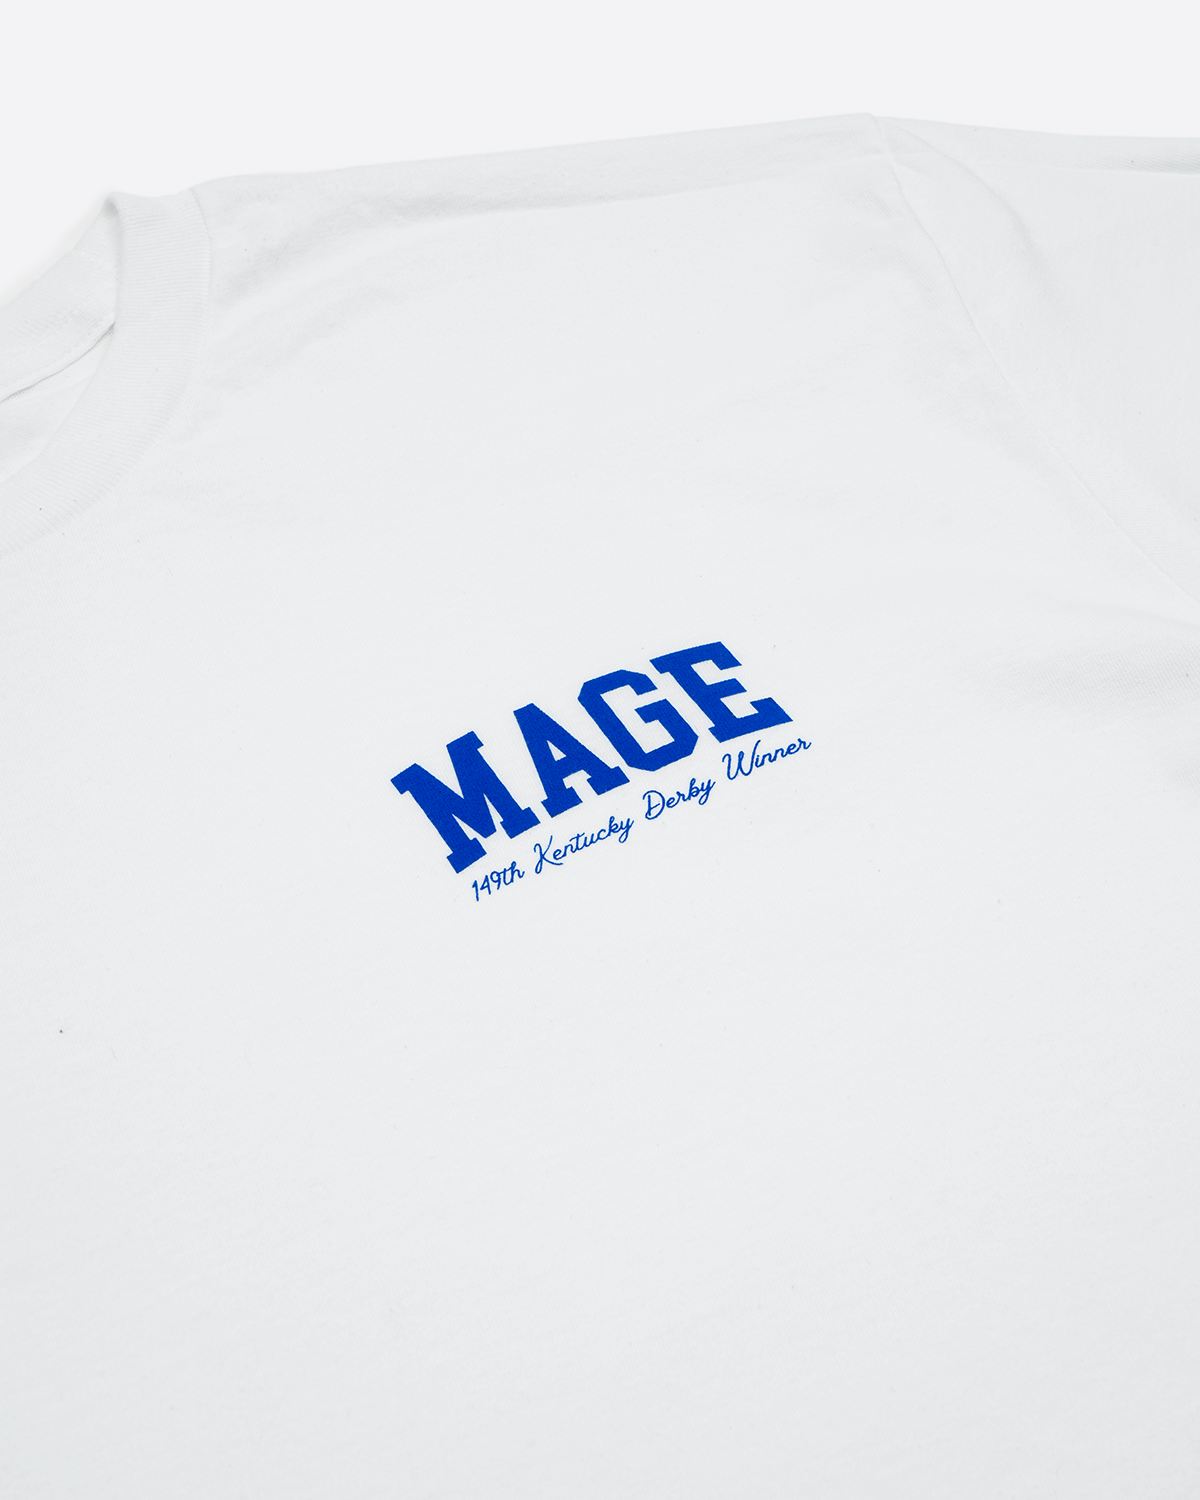 MAGE - Kentucky Derby Winner T-shirt